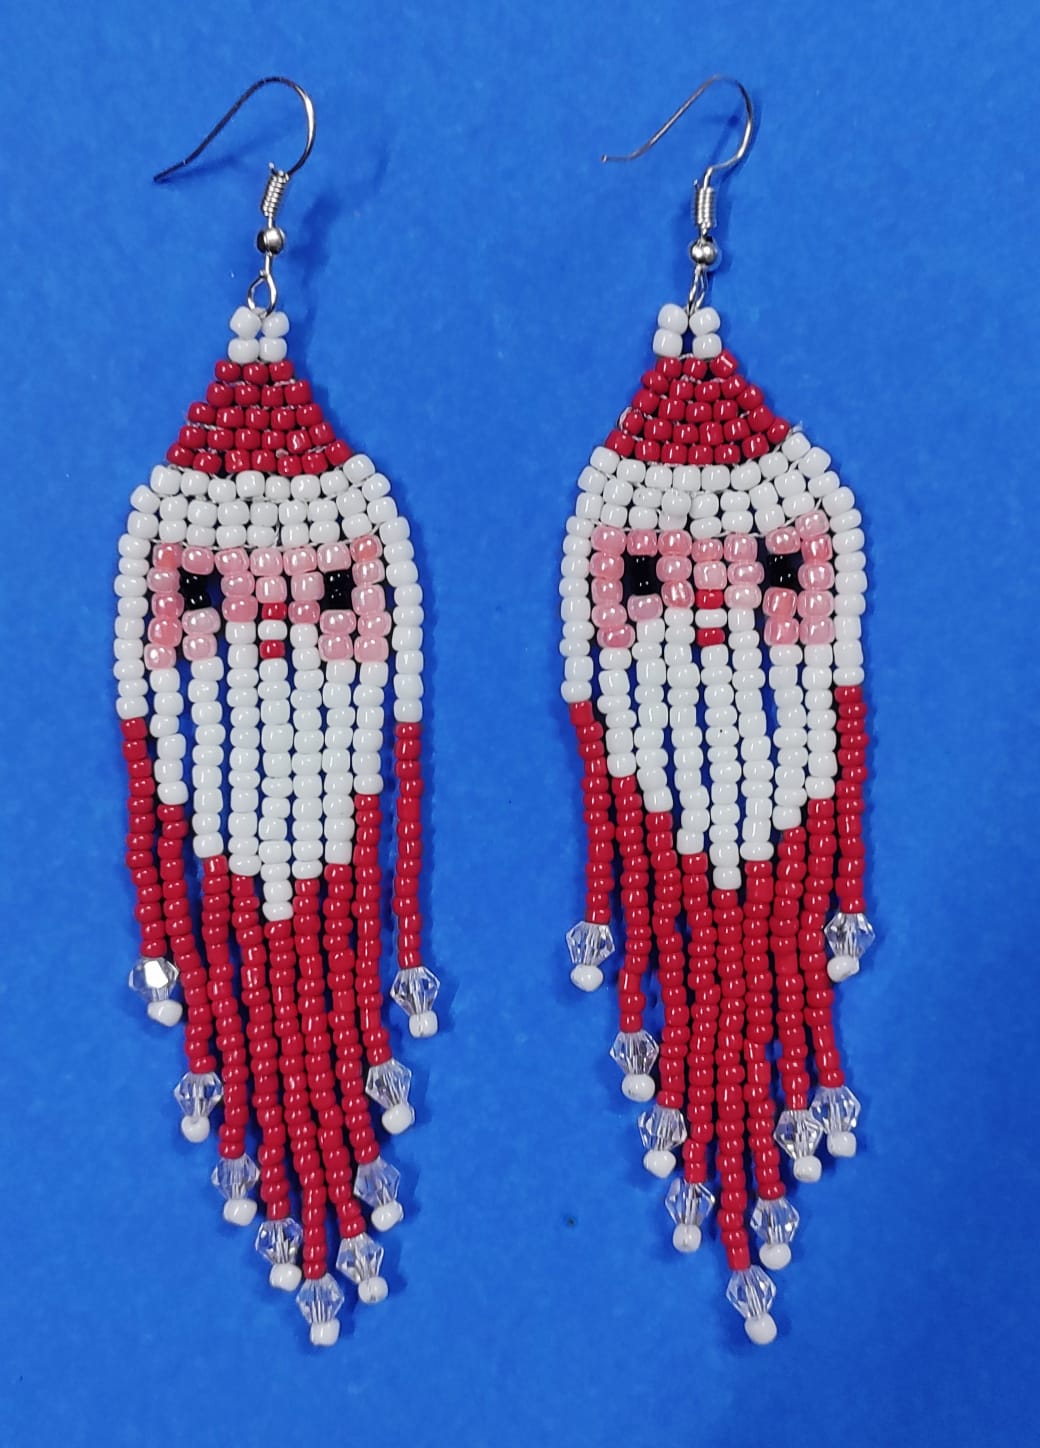 Santa Claus seed bead earrings danglers